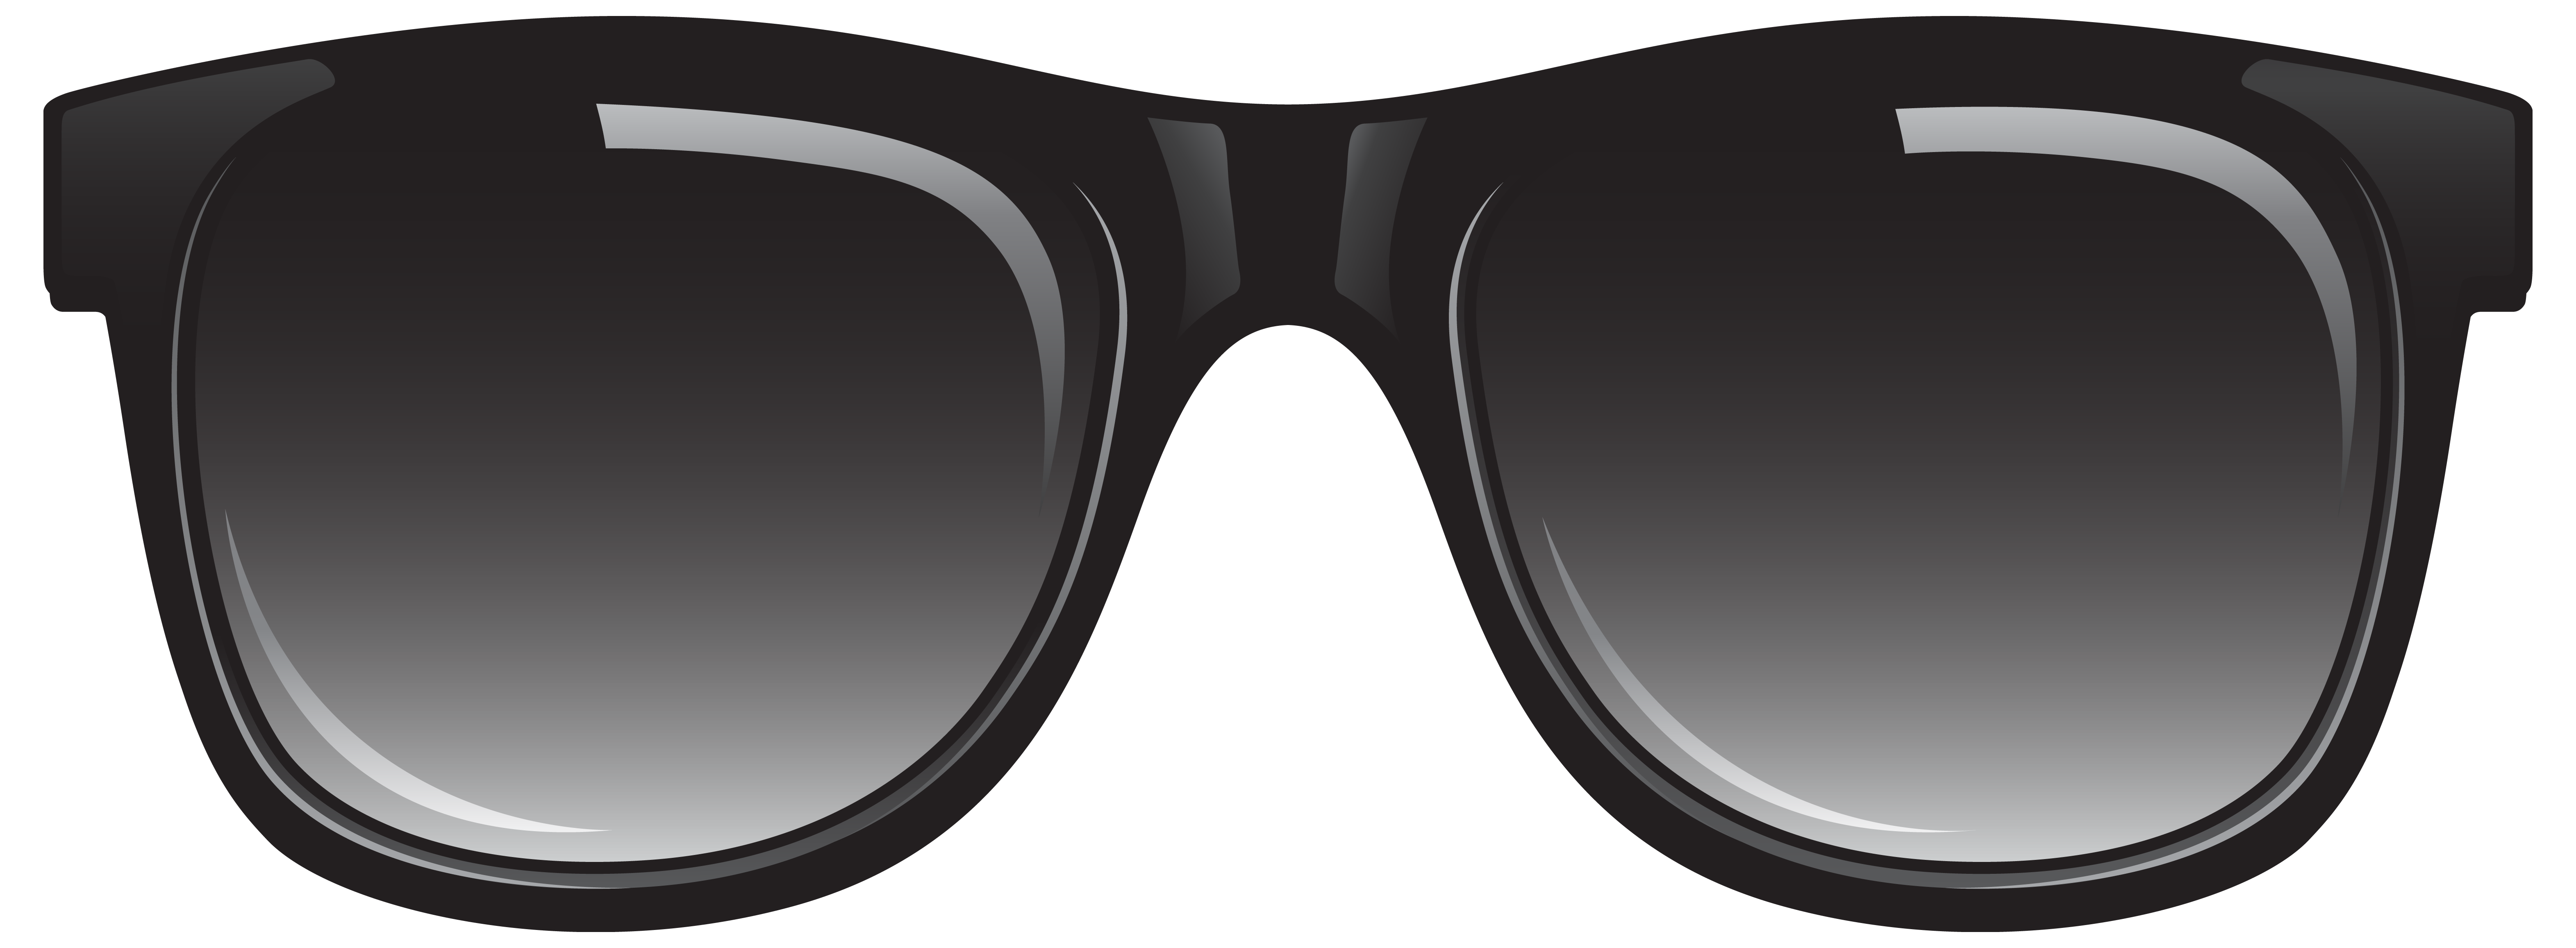 Солнцезащитные очки PNG Файл